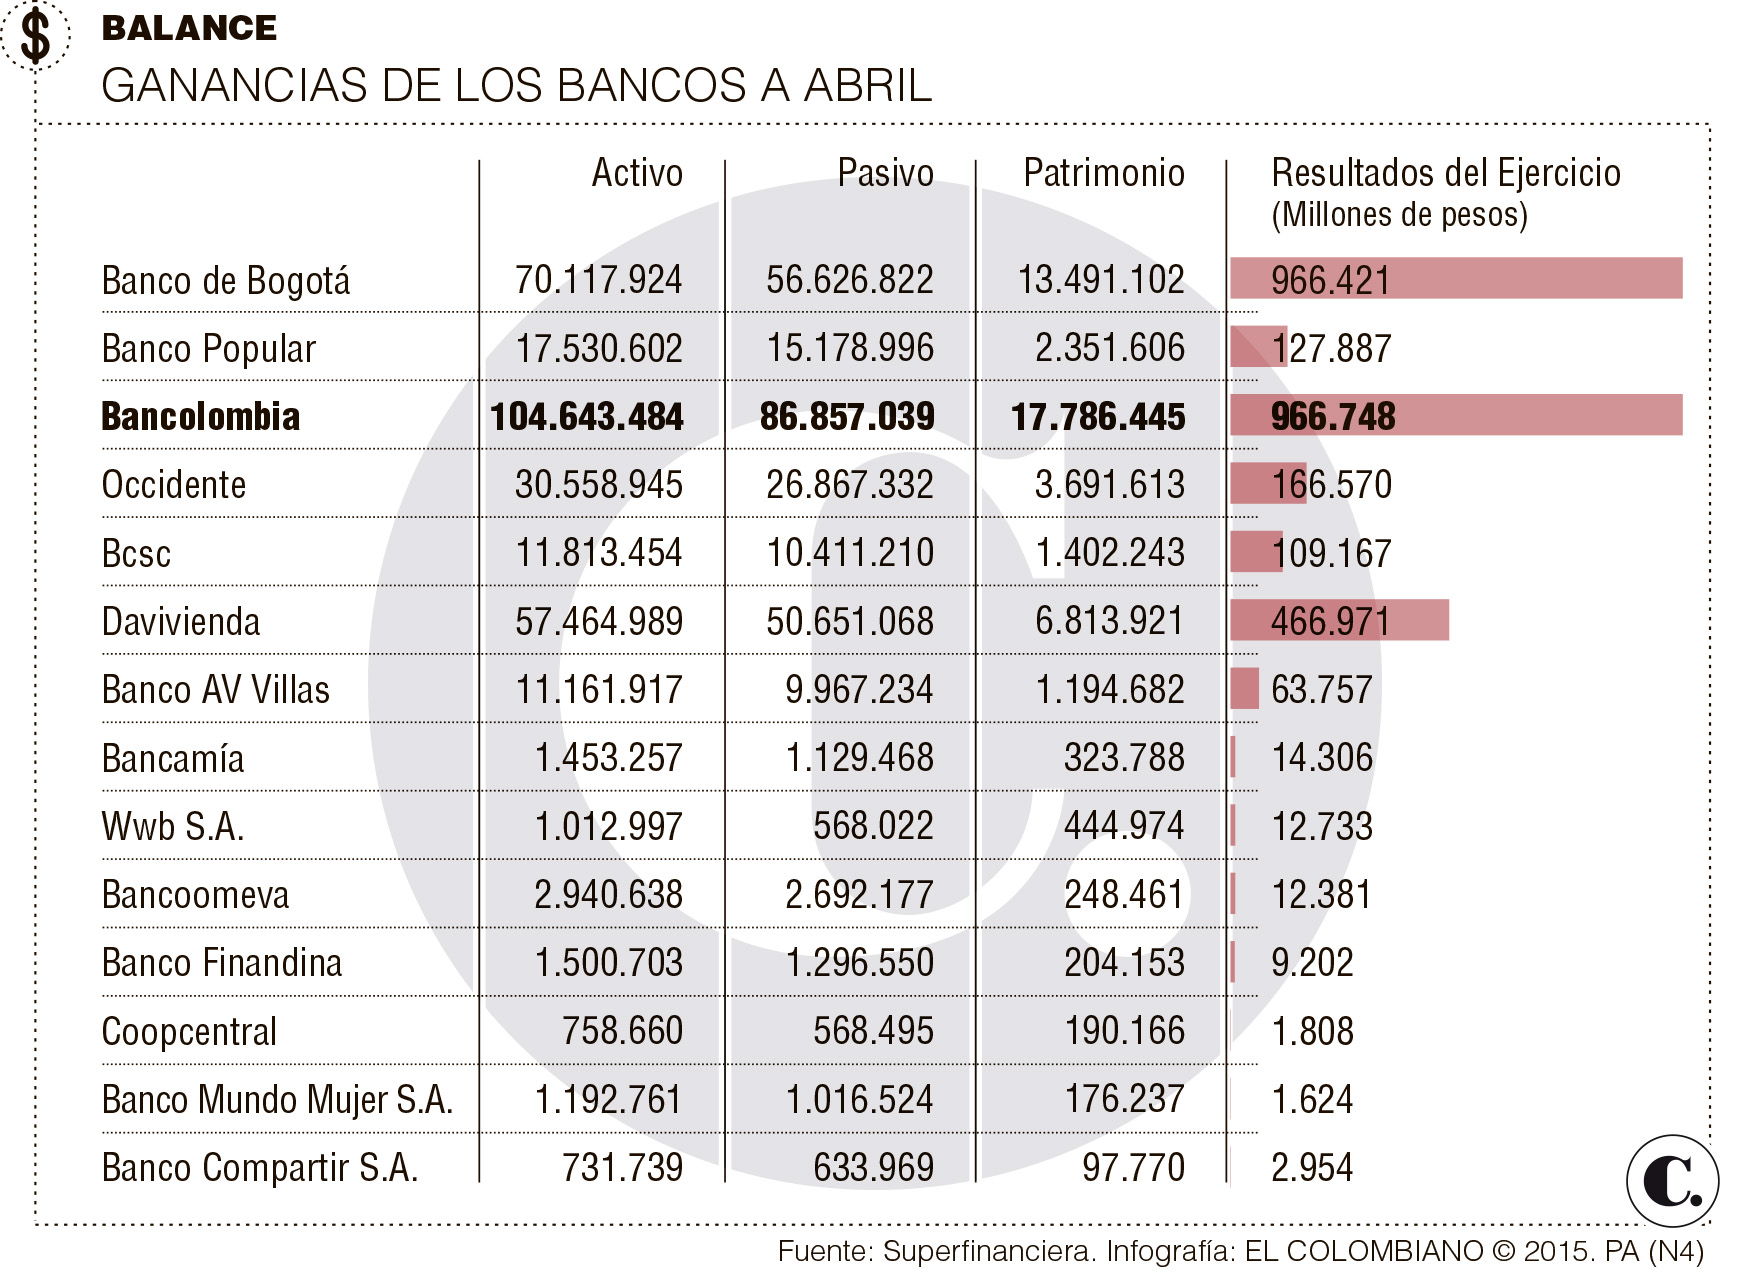 Bancolombia lidera las ganancias de los bancos a abril de este año